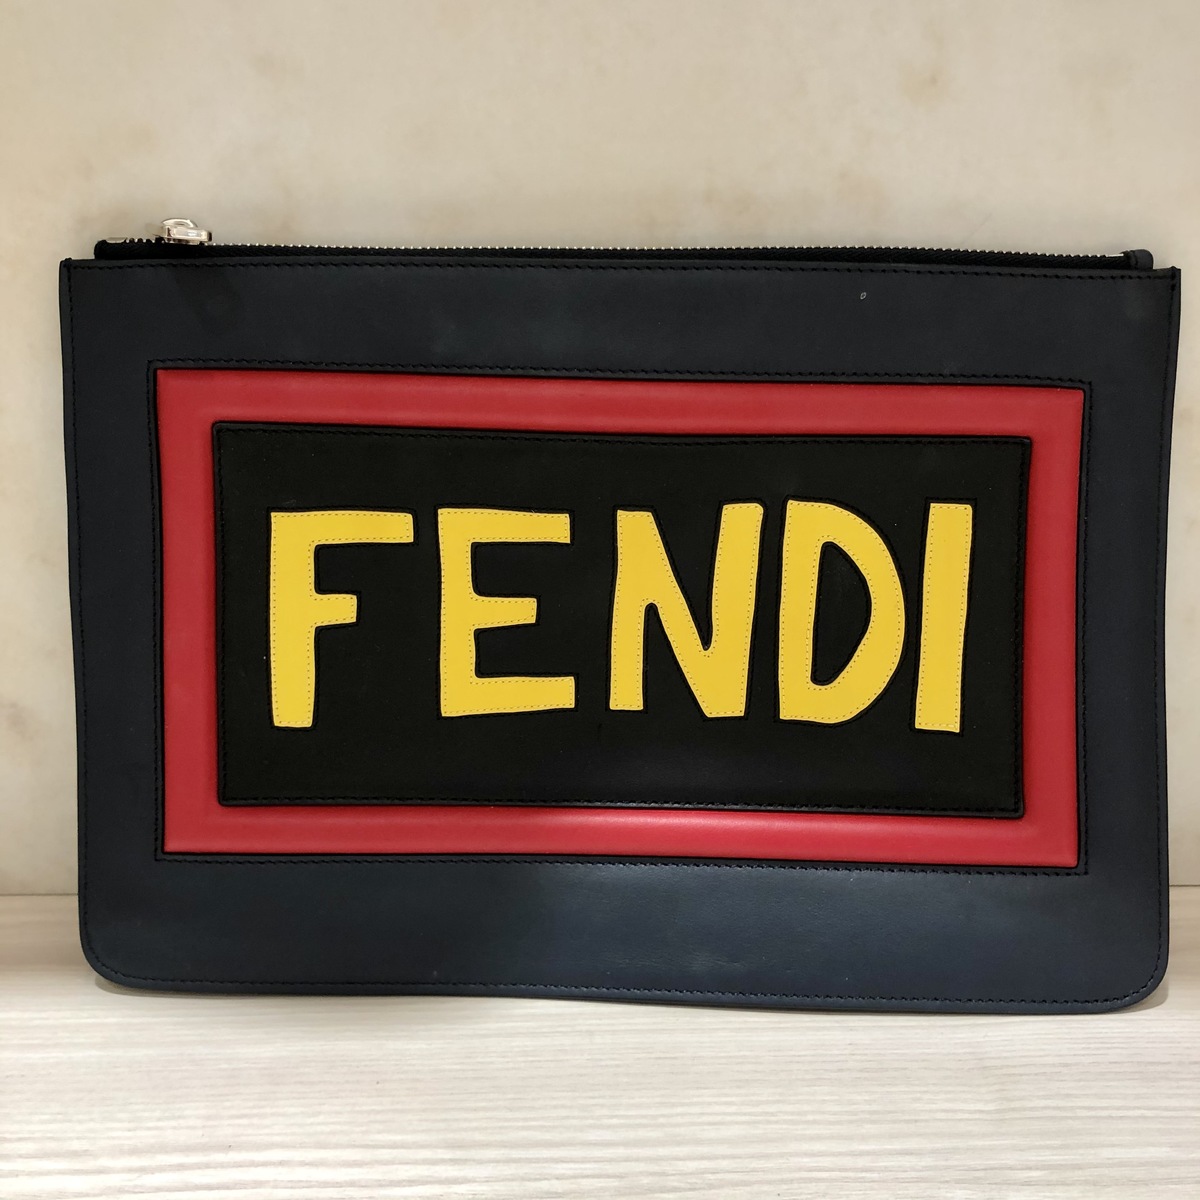 フェンディのFENDI 7N0078 レザー クラッチバッグの買取実績です。